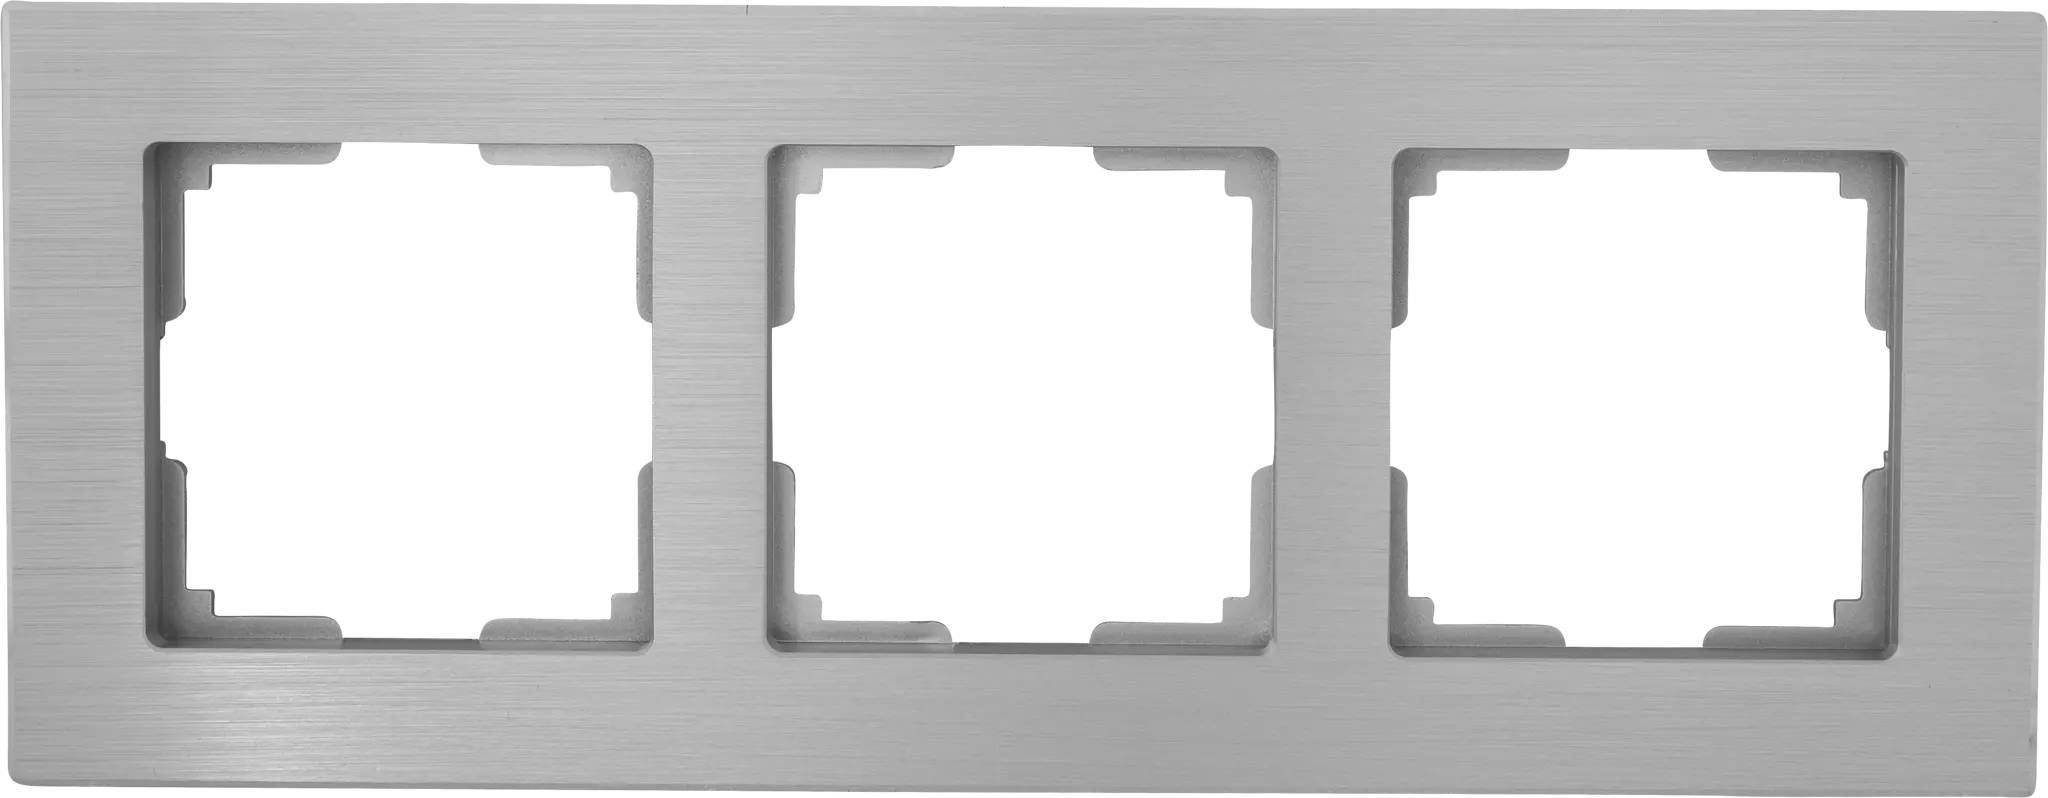 Рамка для розеток и выключателей Werkel Aluminium 3 поста, металл, цвет алюминий рамка на 2 поста werkel aluminium w0021708 4690389158056